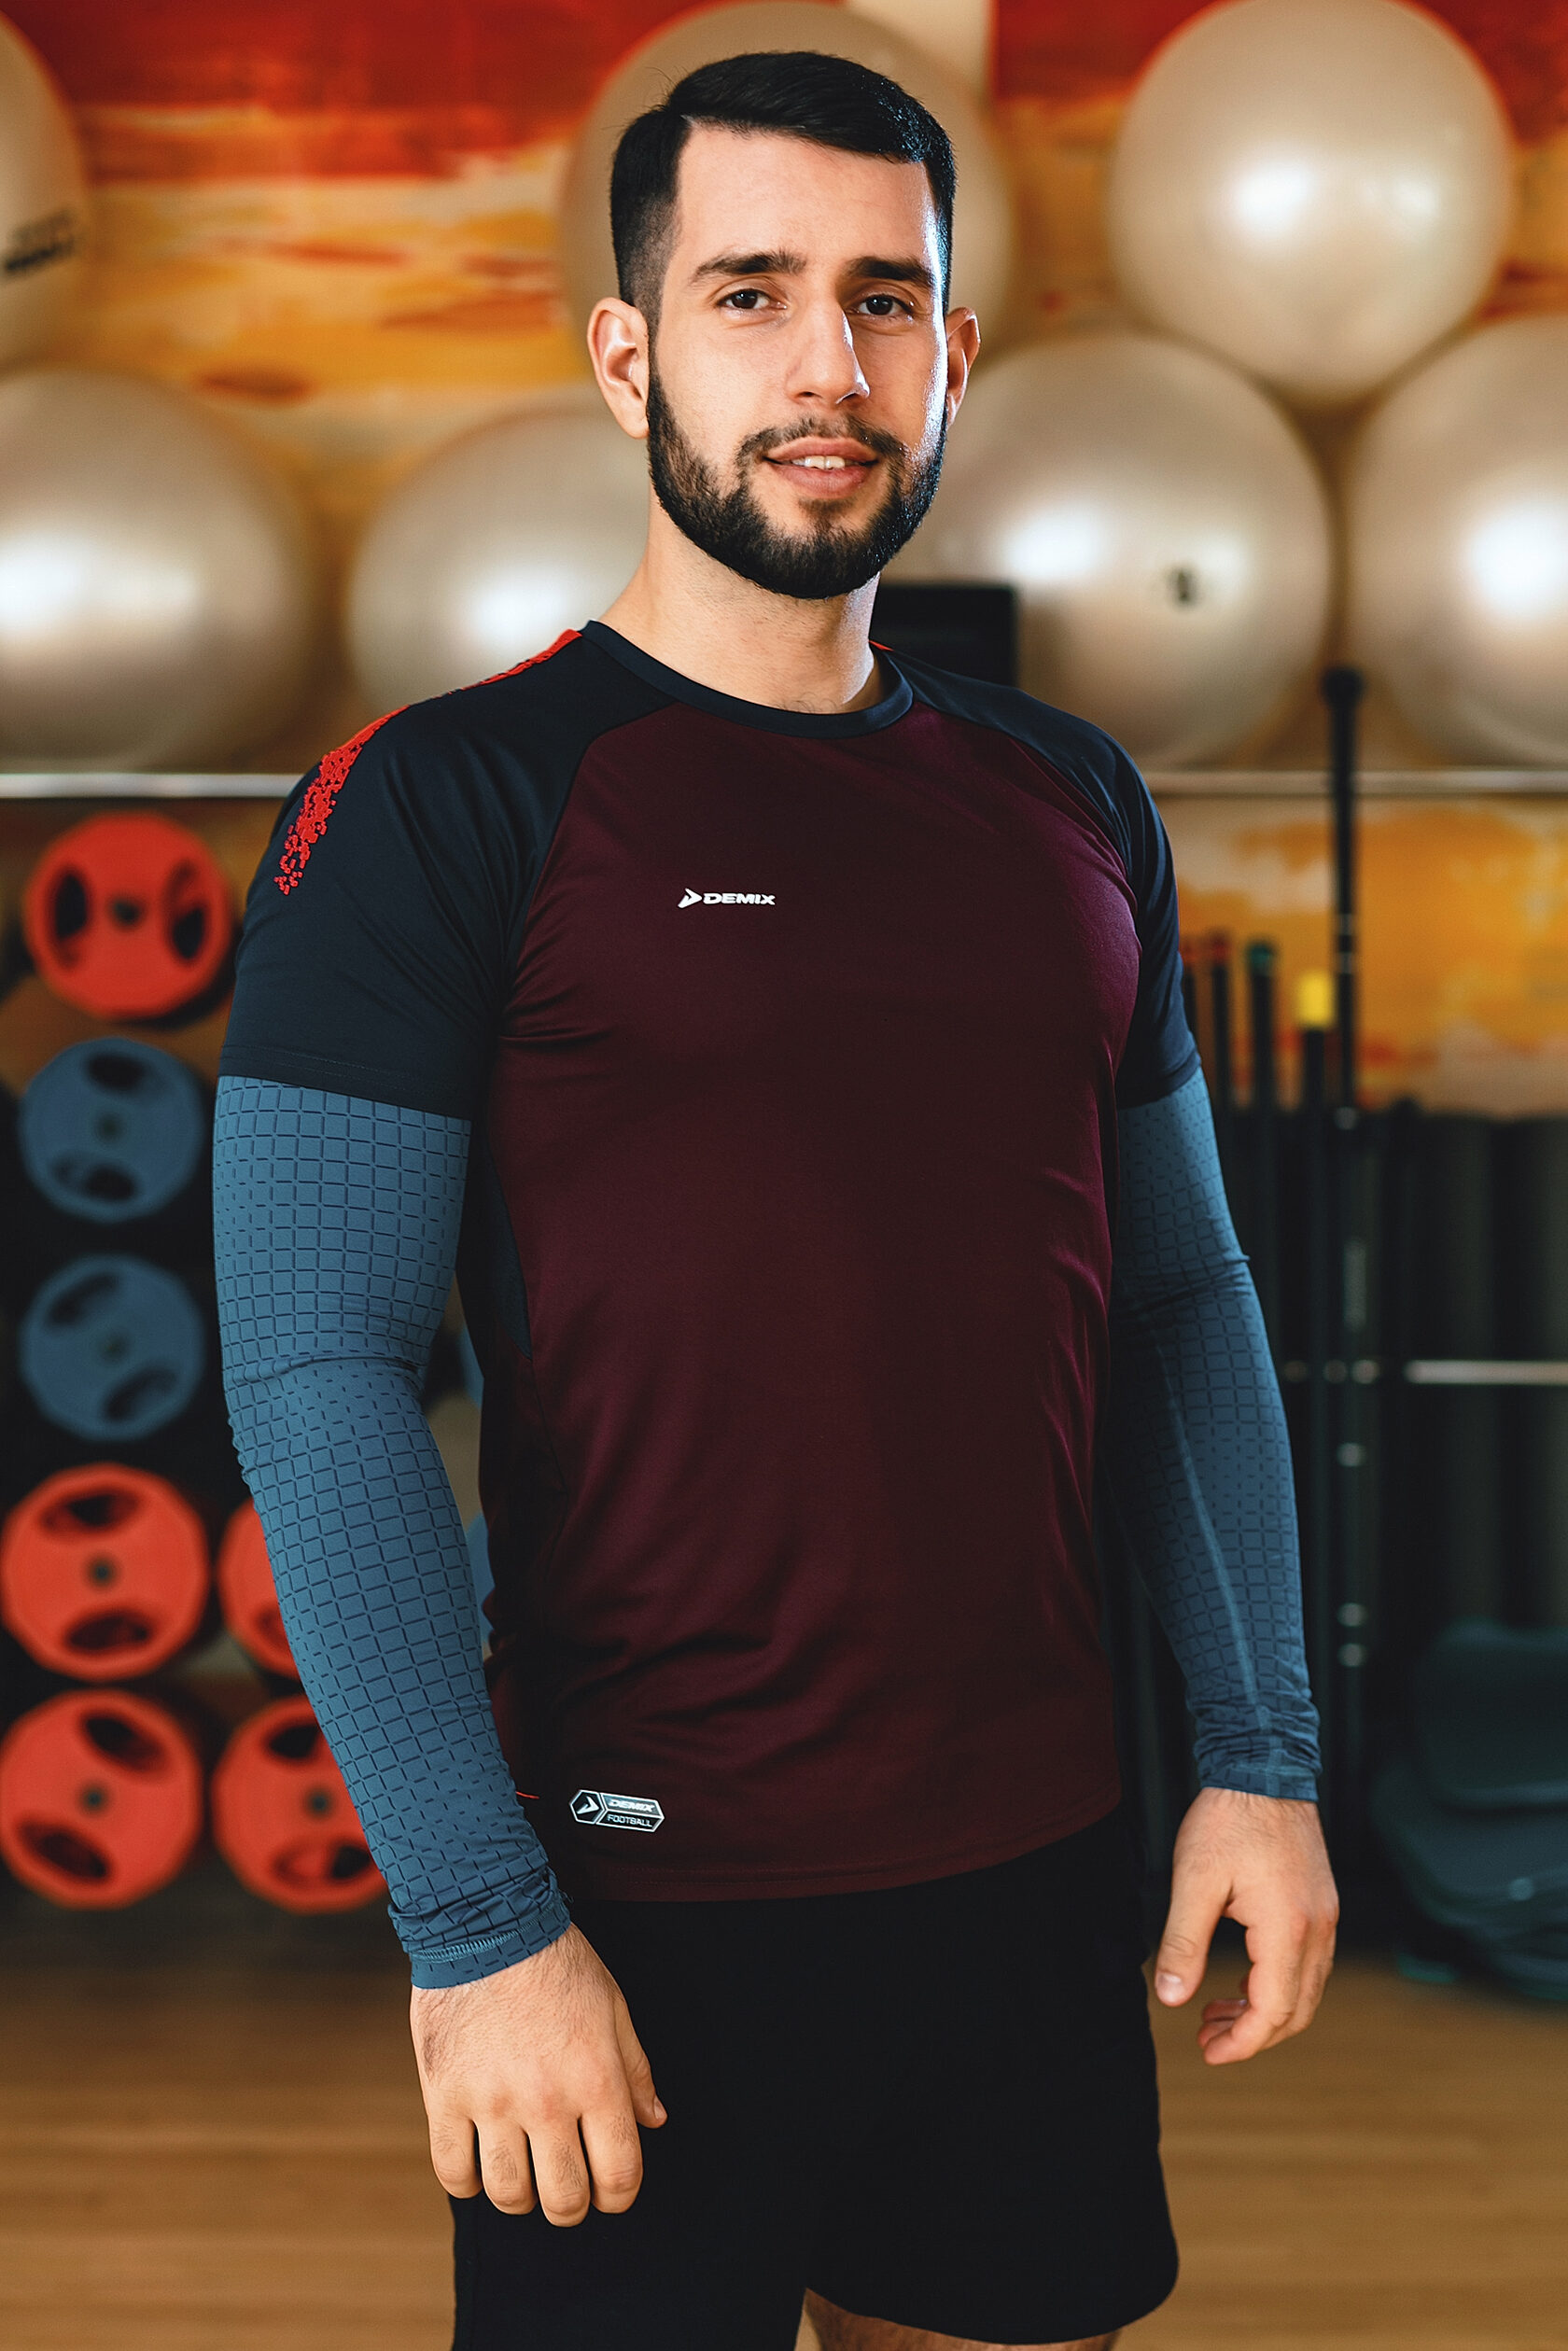 Шихсефиев Расим, инструктор групповых программ фитнес-клуба Orange Fitness в Набережных Челнах